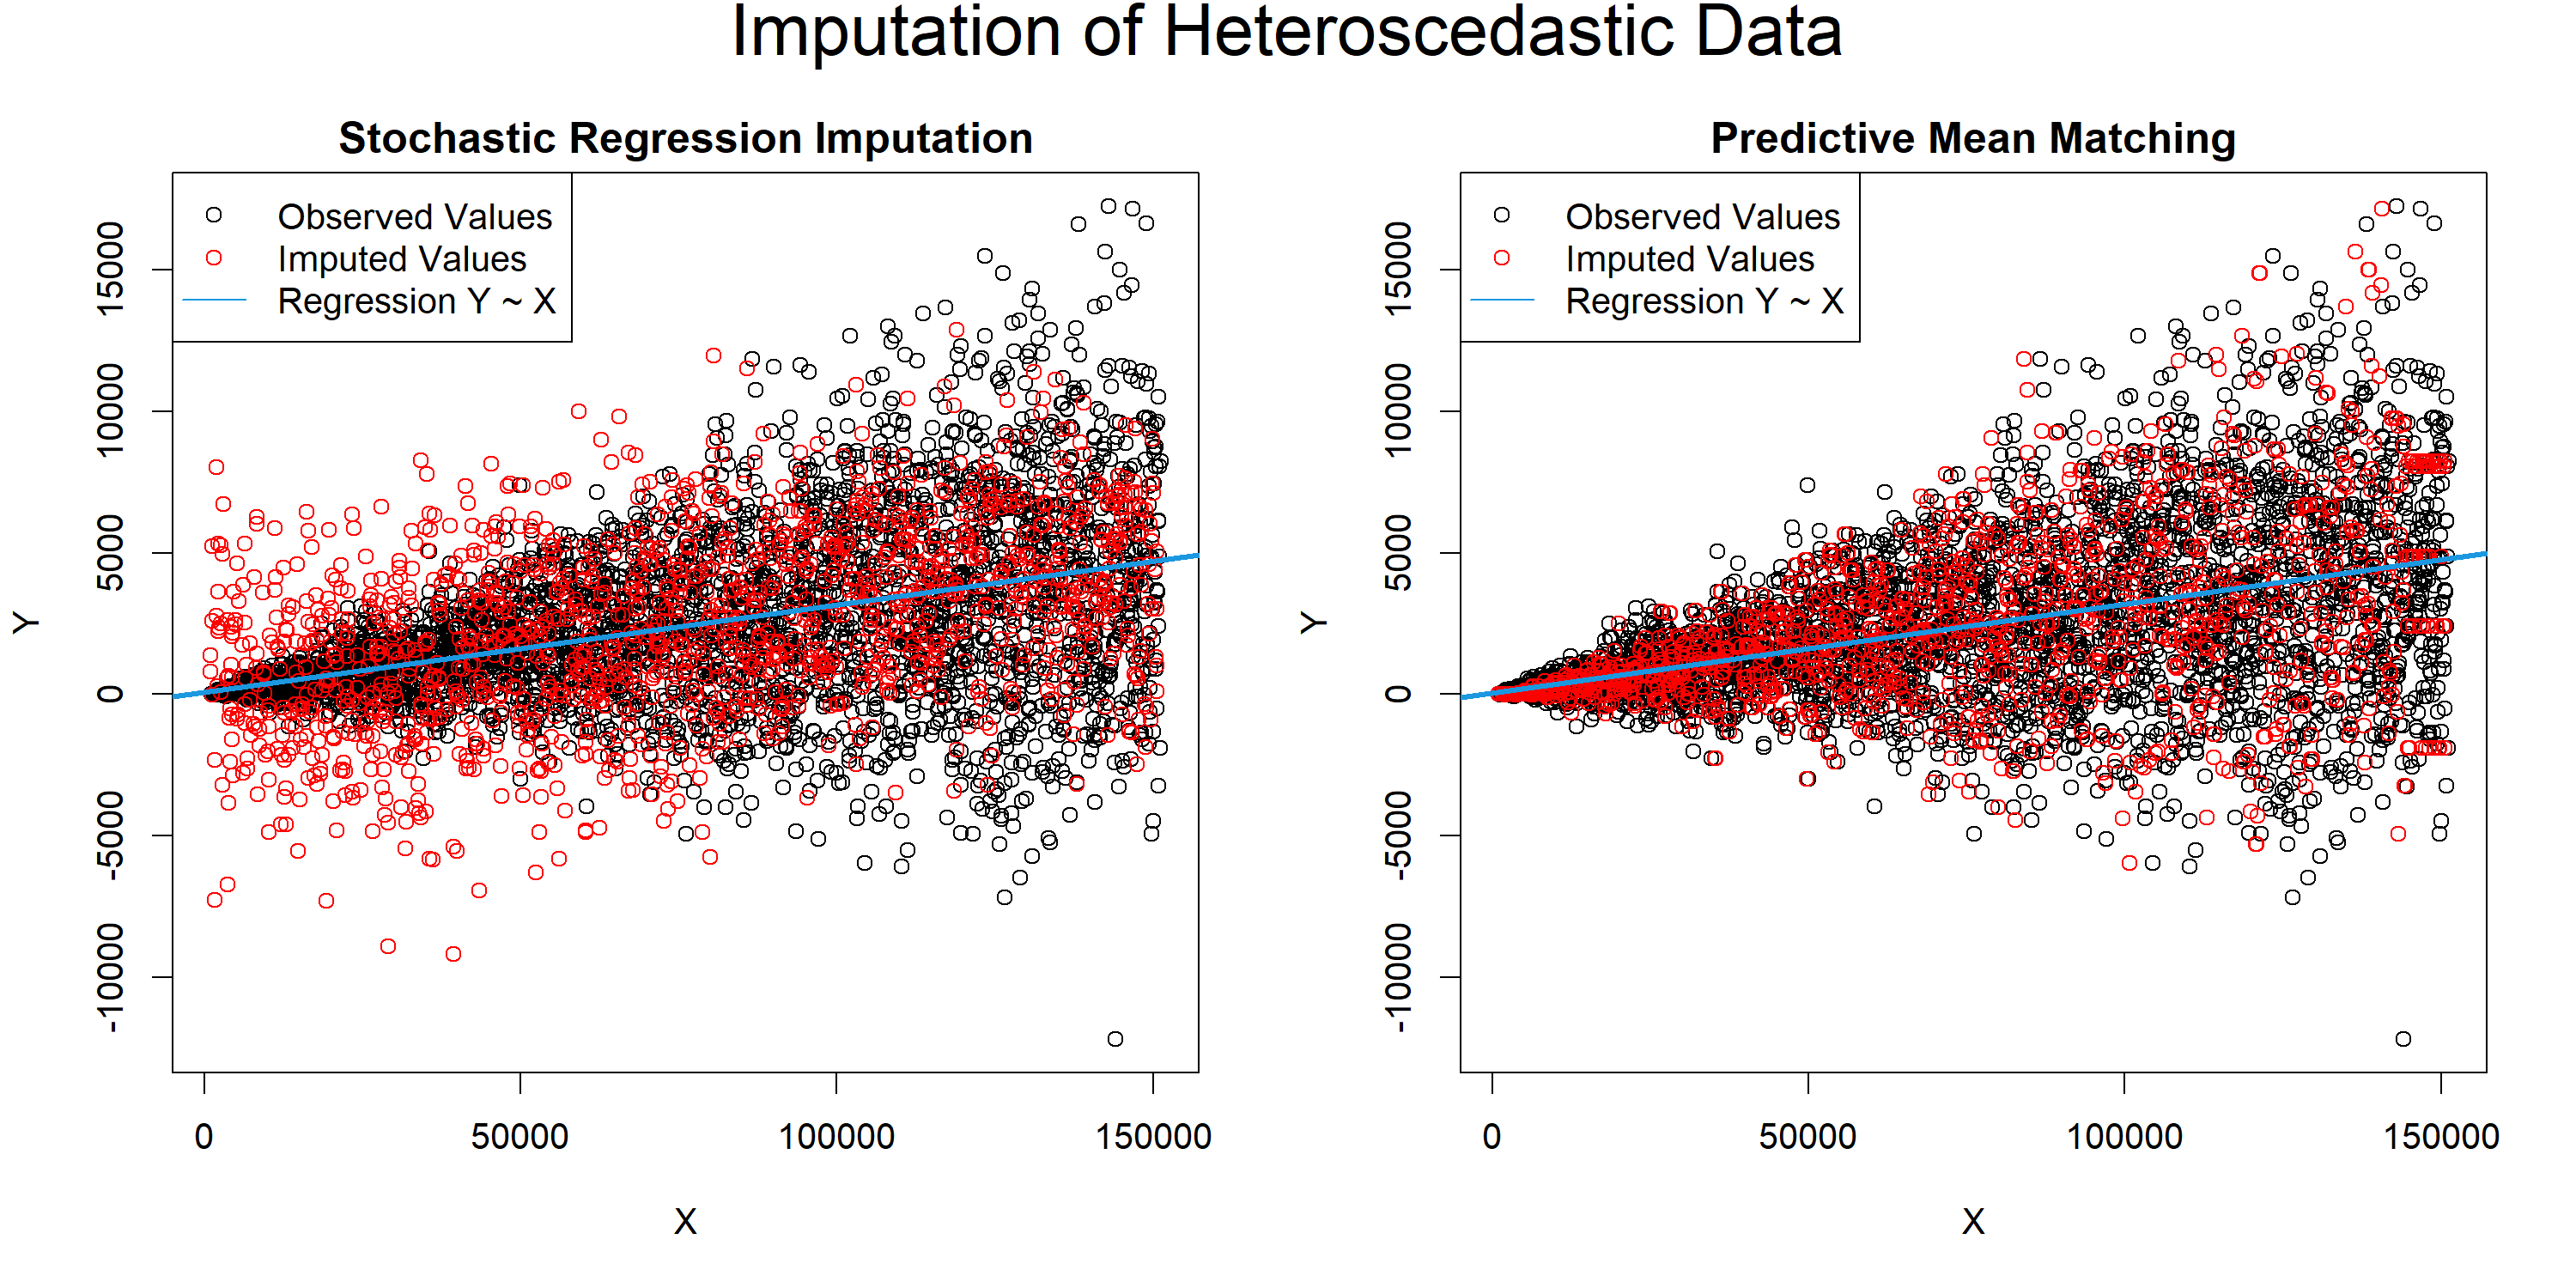 Stochastic Regression Imputation & Predictive Mean Matching Comparison for Heteroscedasticity